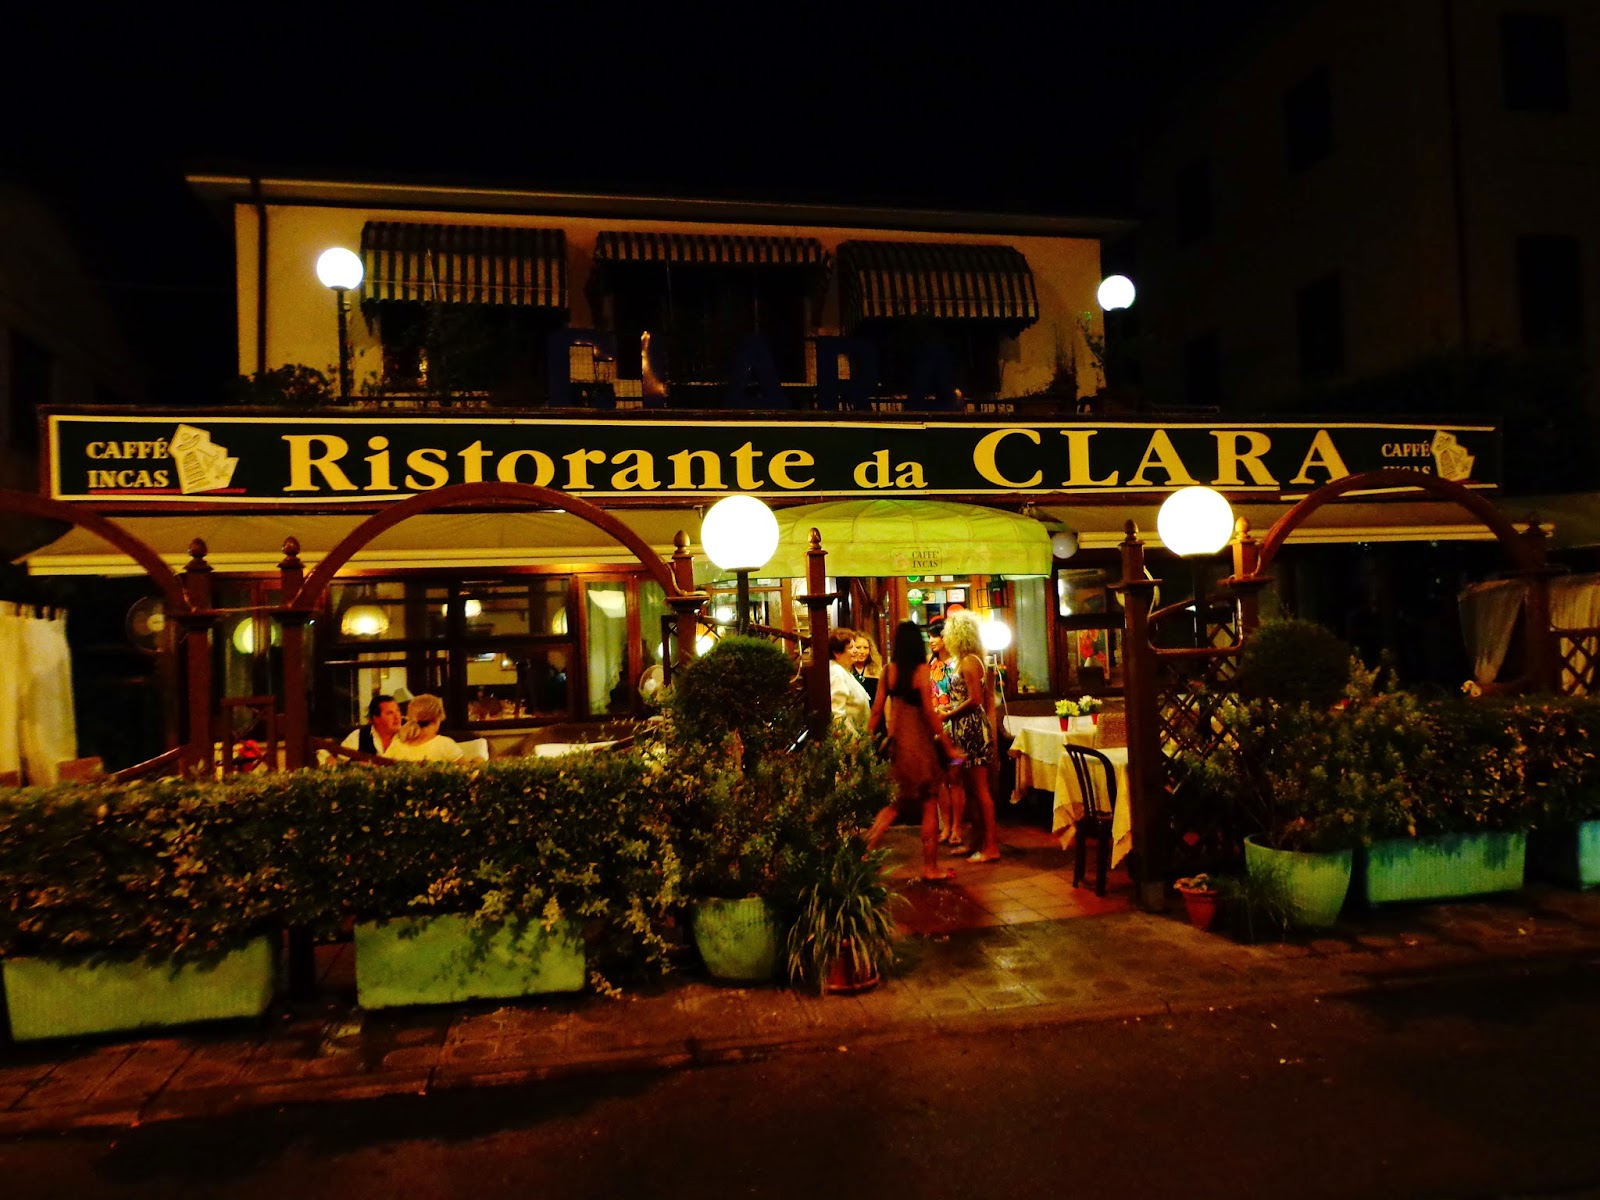 Da-Clara-Camaiore